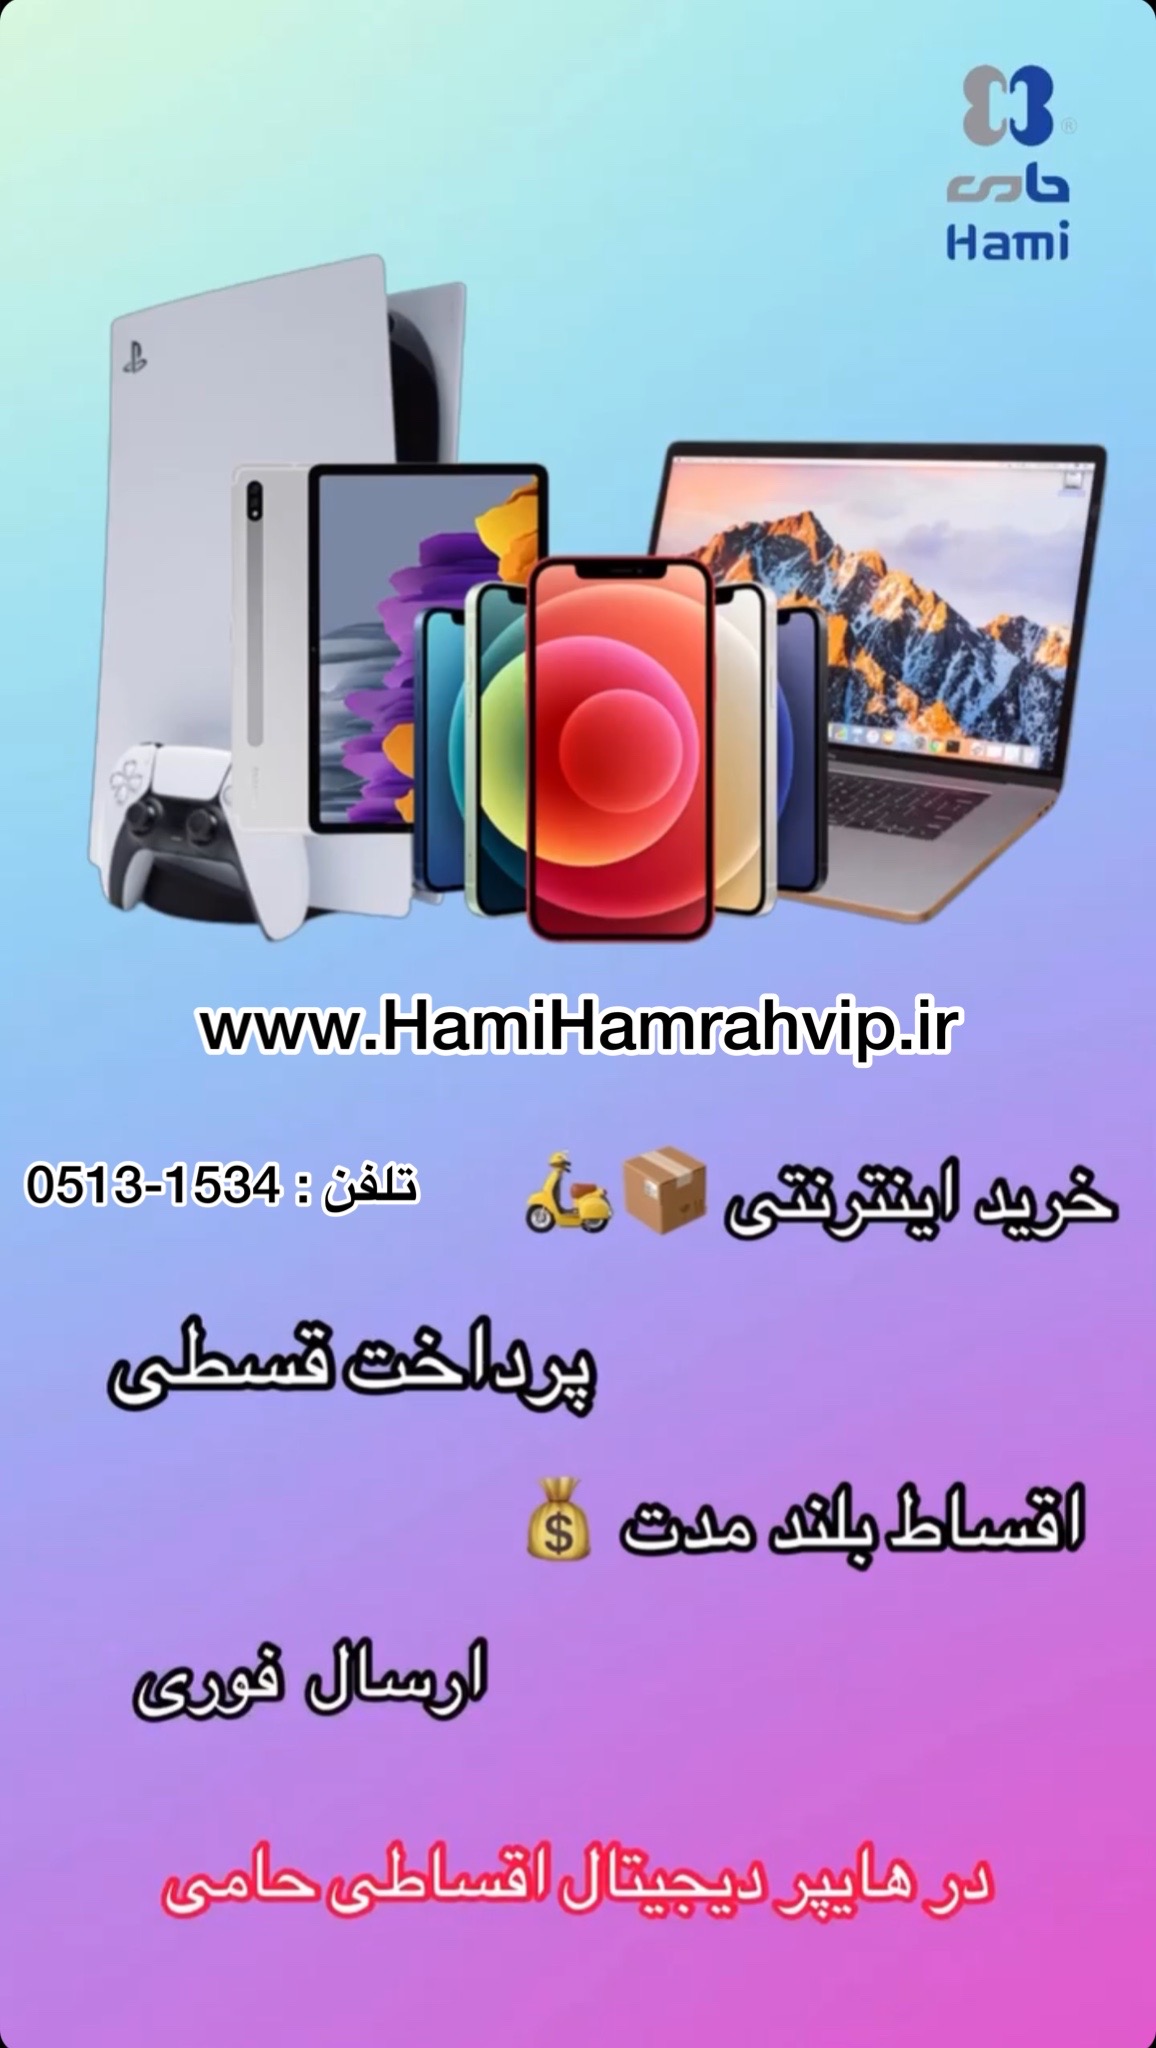 گوشی و لپ تاپ کارکرده اقساطی باکمترین پیش پرداخت www.hamihamrahvip.ir